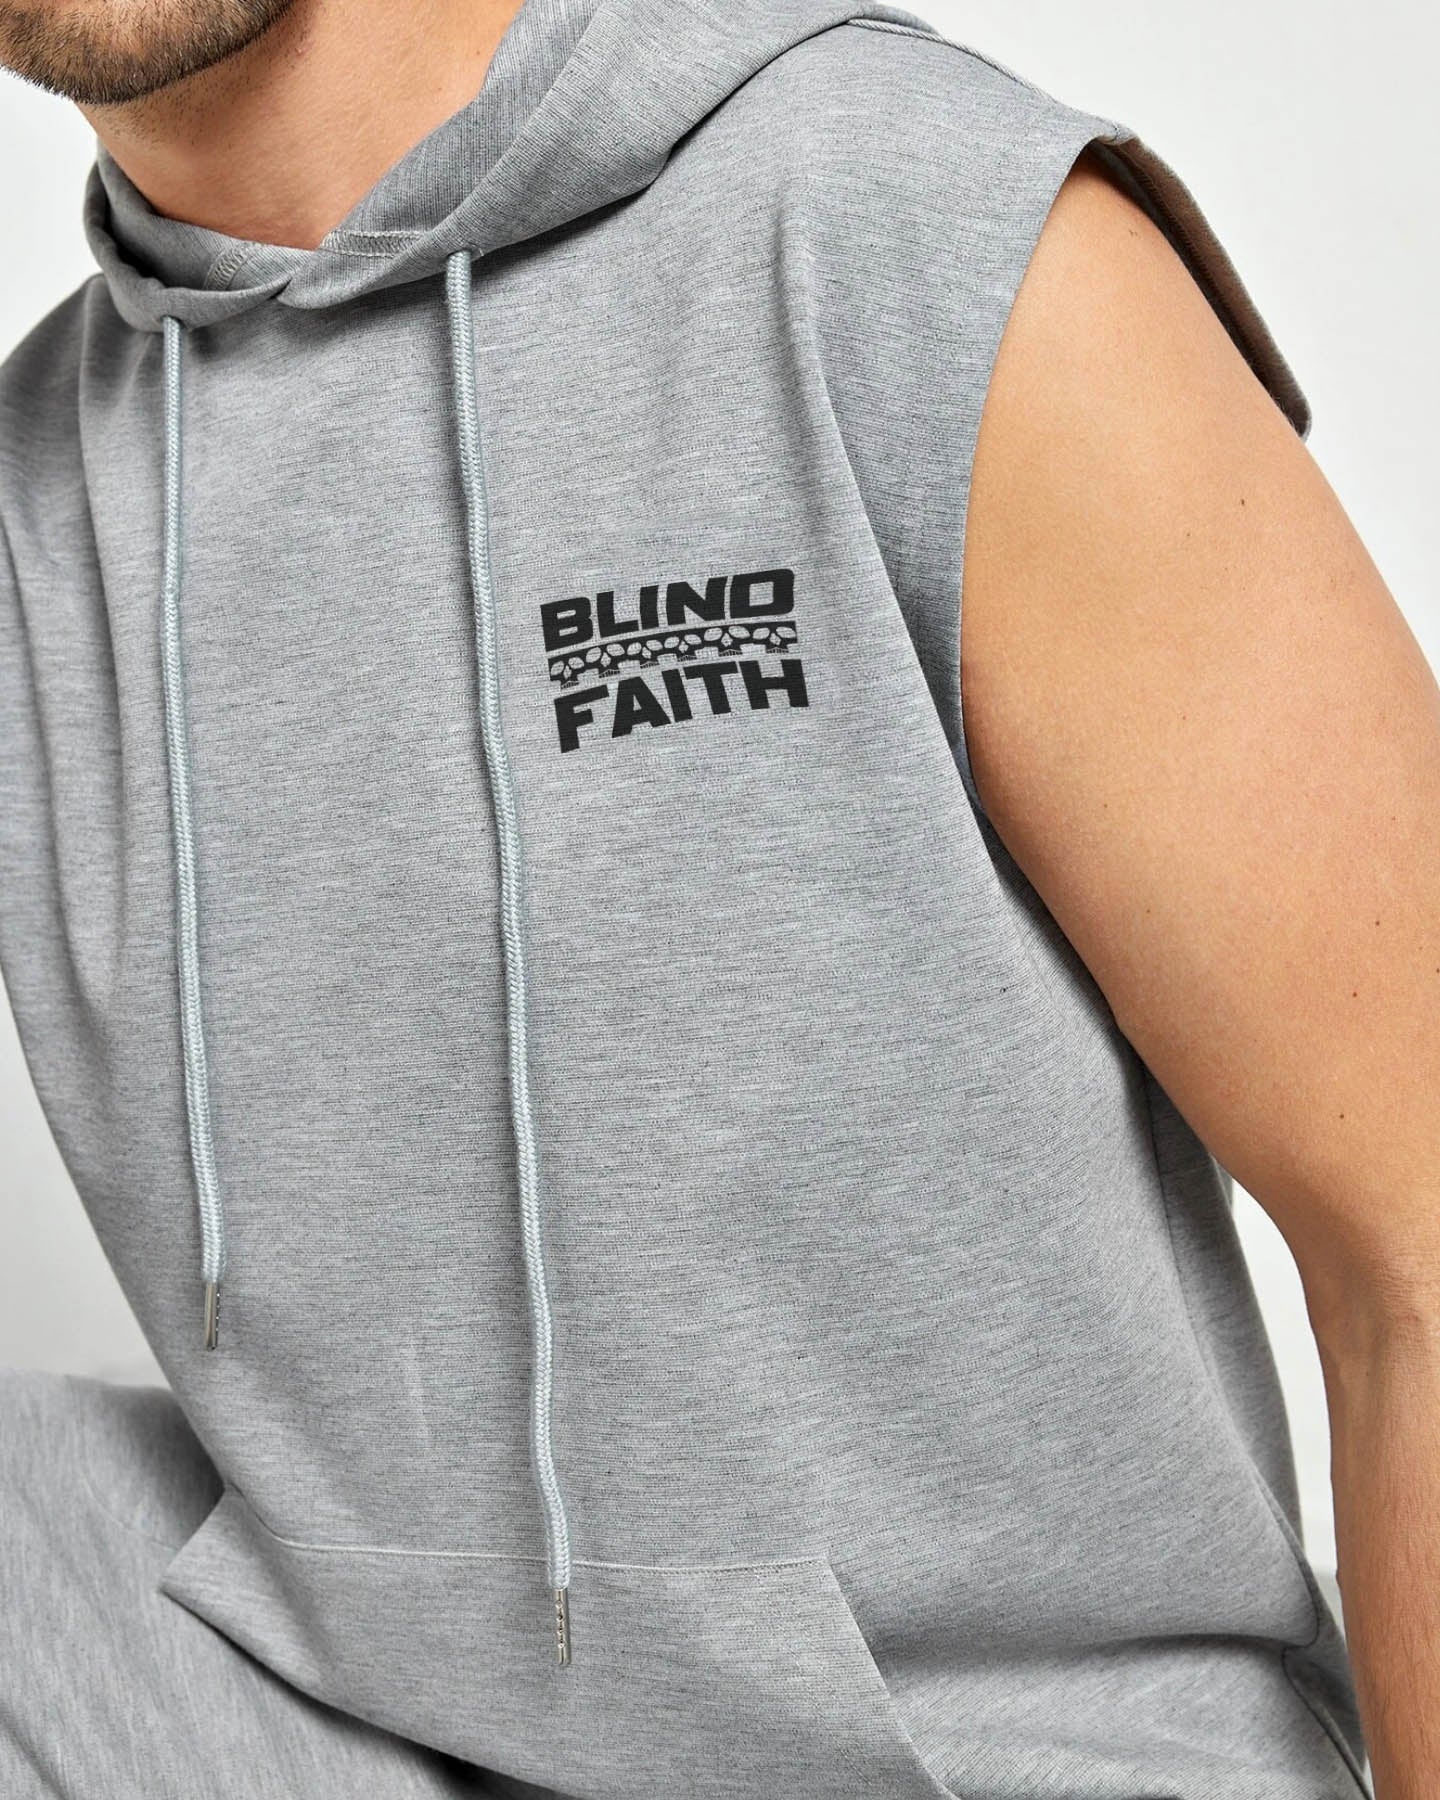 Blind faith Co-ord set for Men